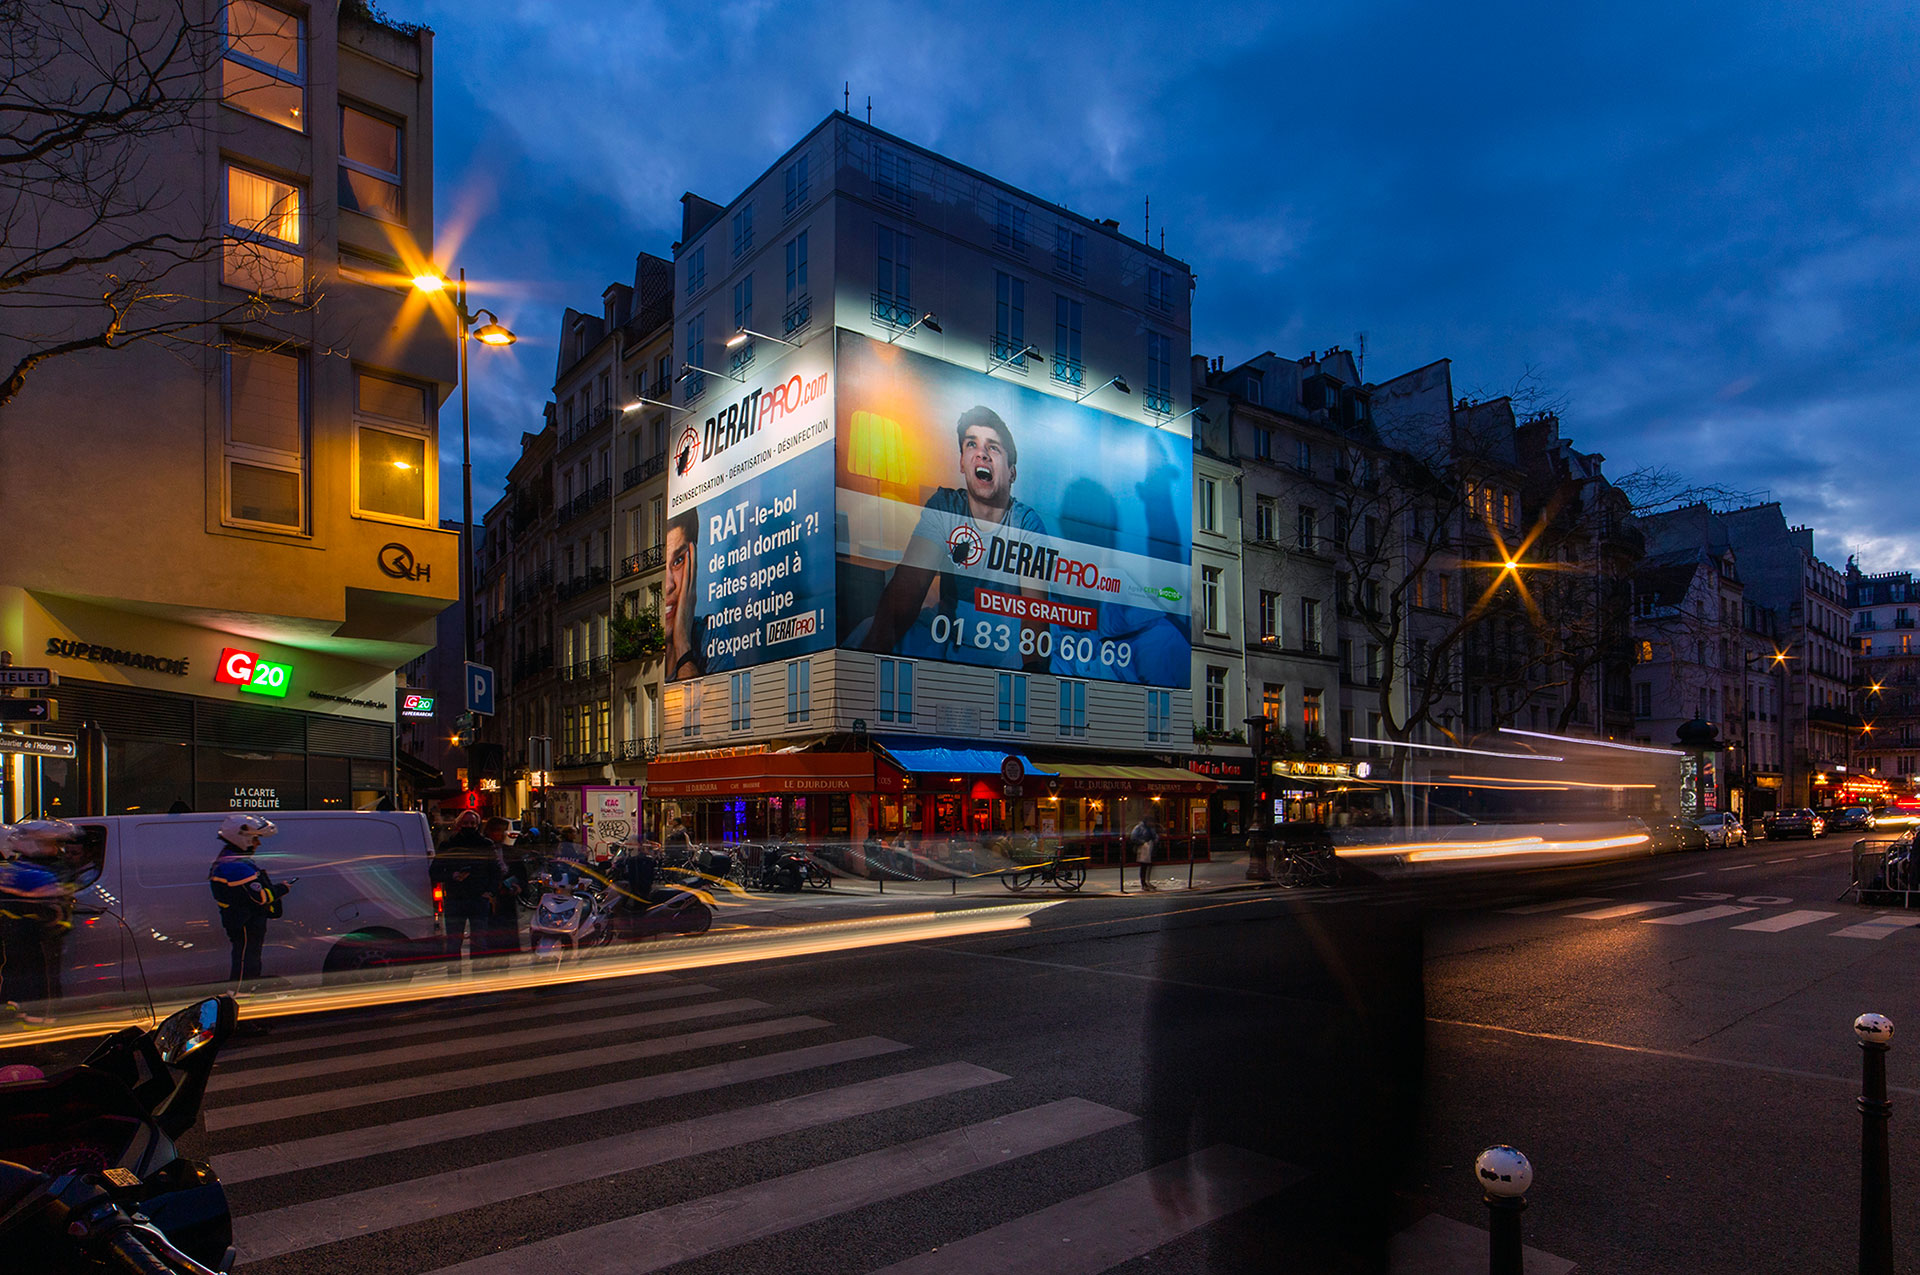 Giant advertising banner for Deratpro in Paris